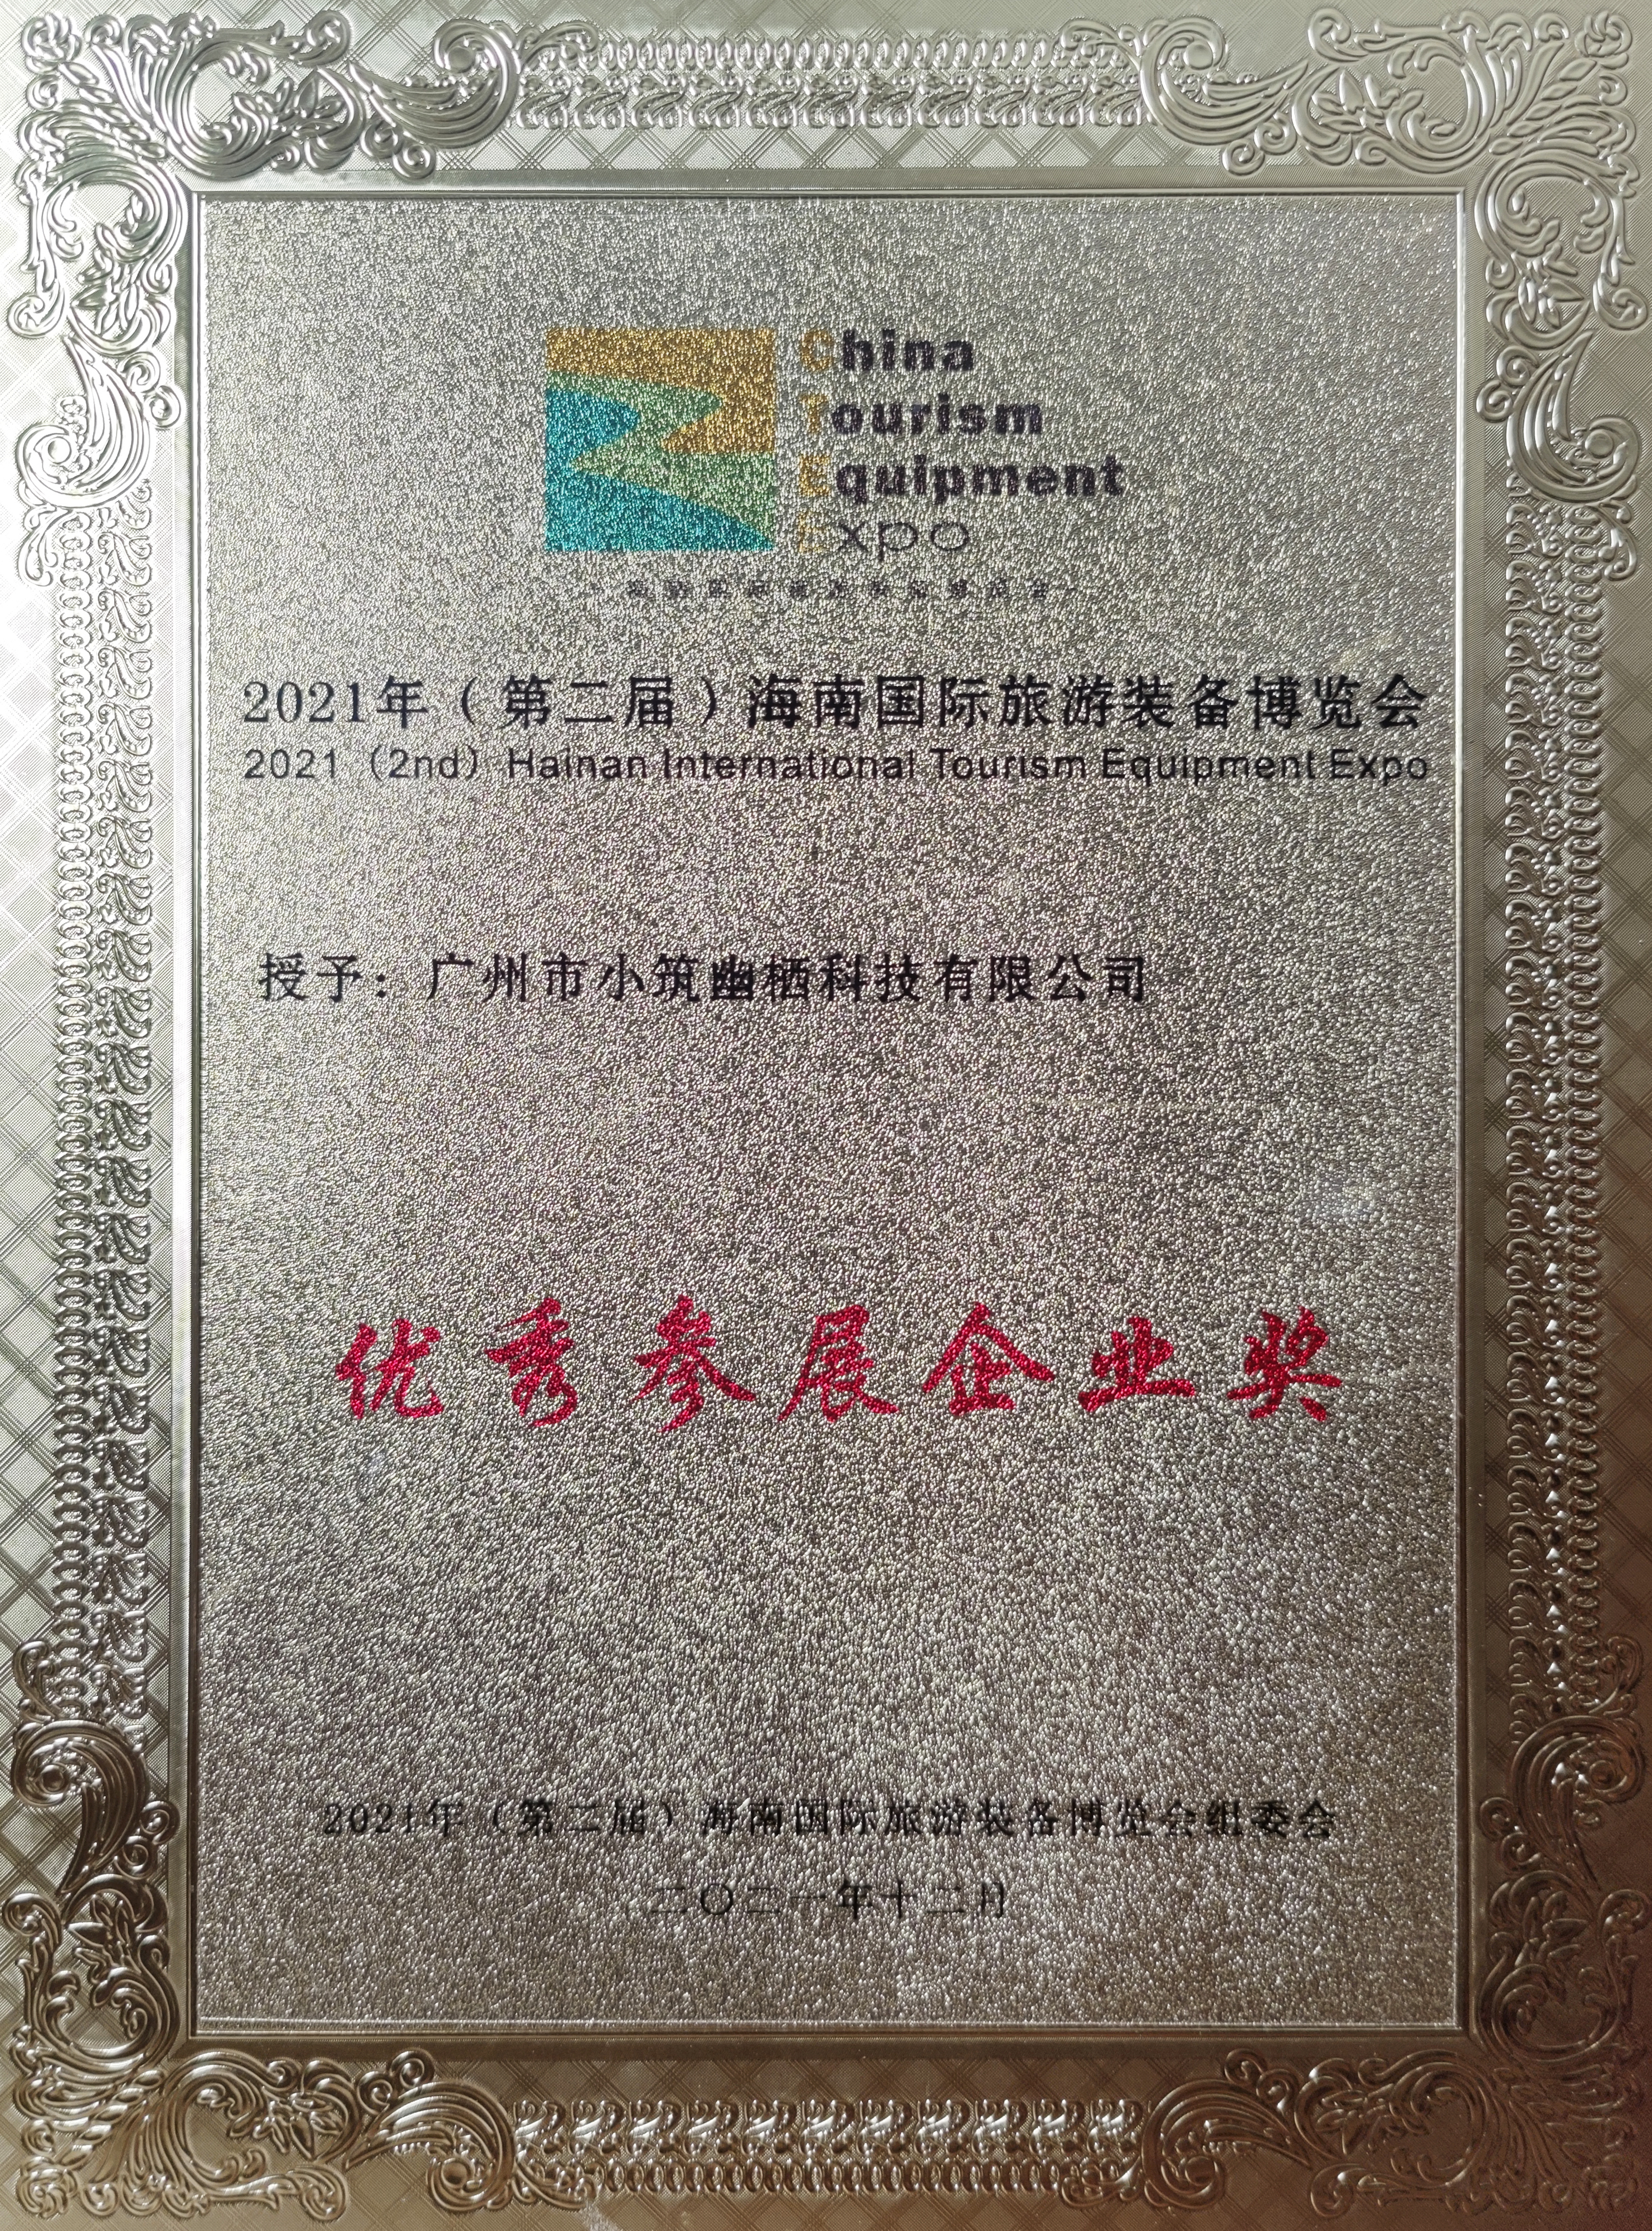 honor certificate (1)